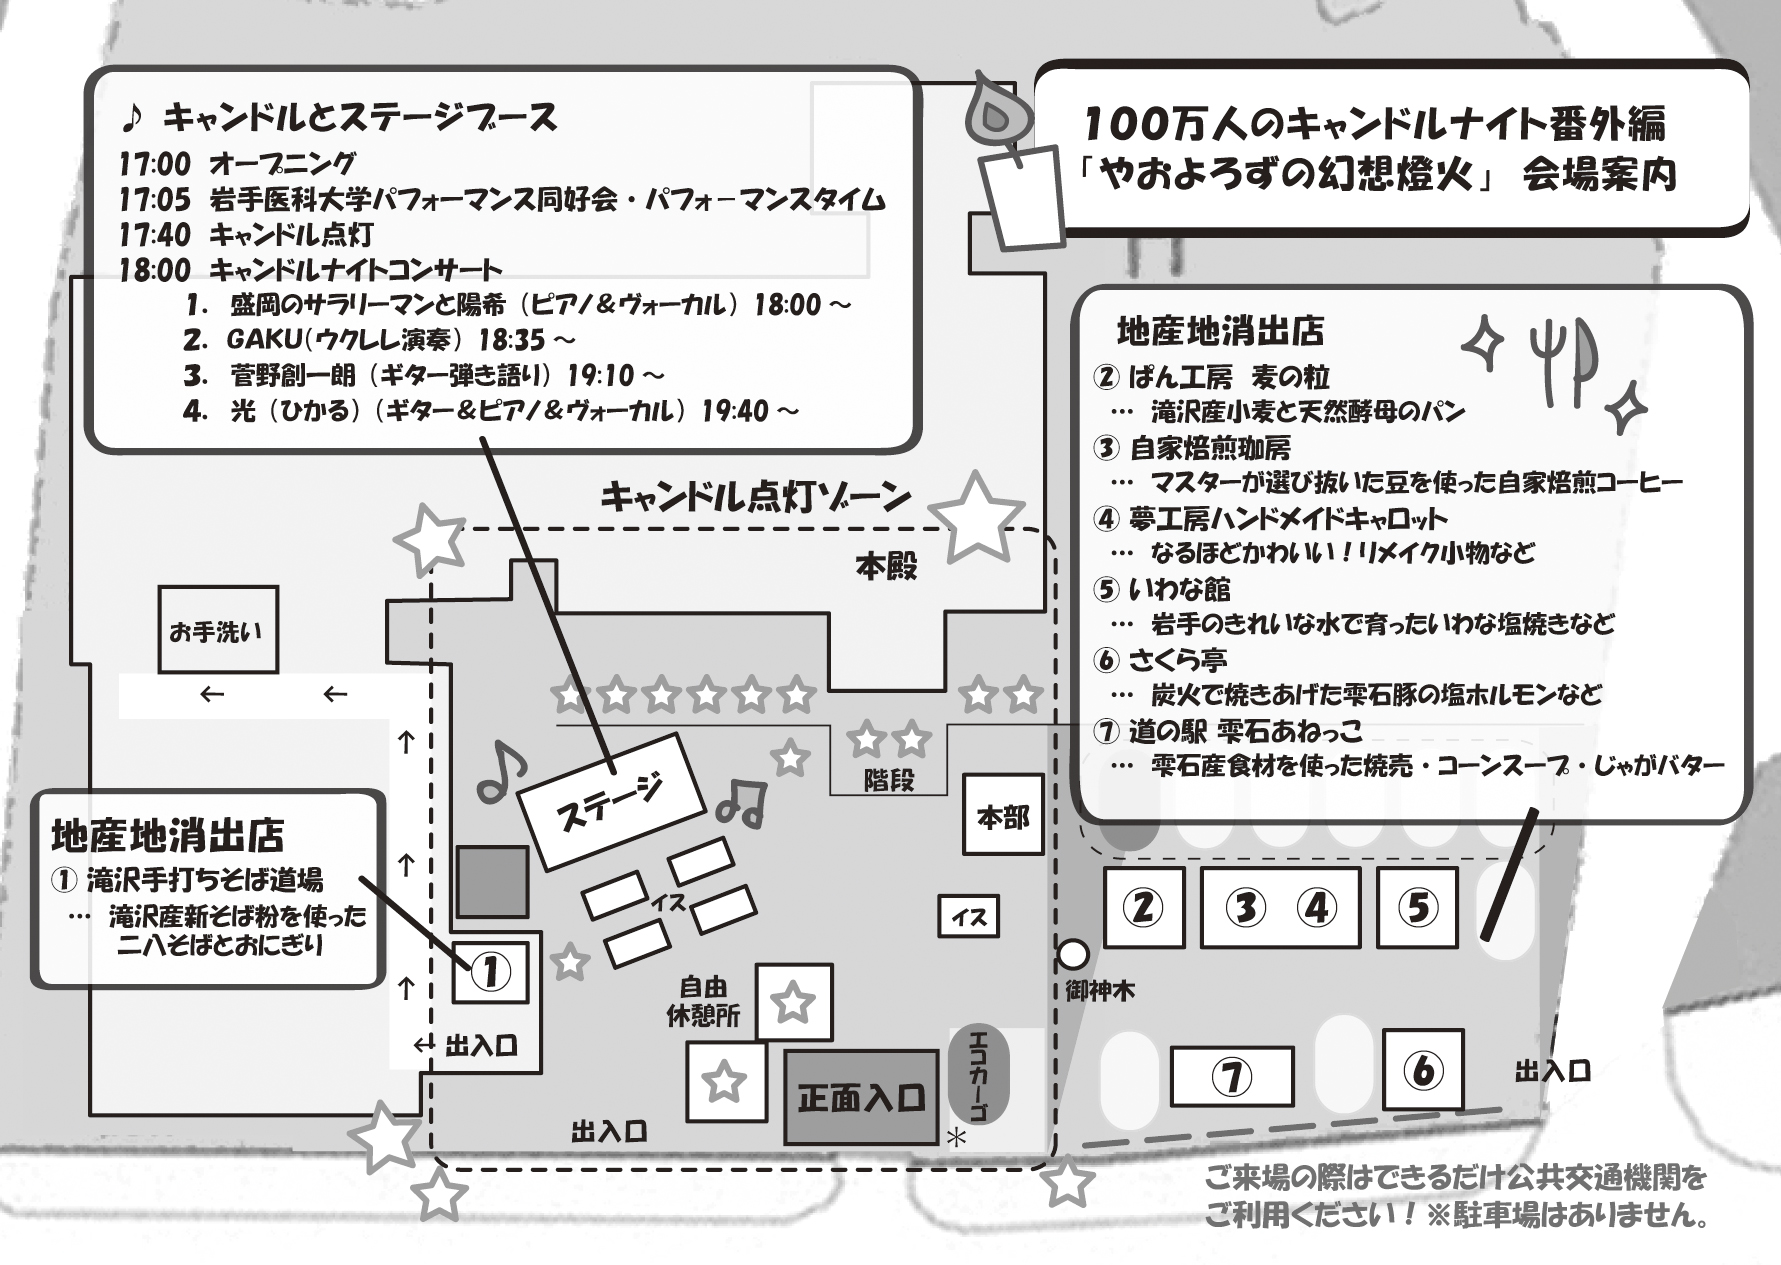 http://blog.iwate-eco.jp/image/%E4%BC%9A%E5%A0%B4%E6%A1%88%E5%86%85.jpg